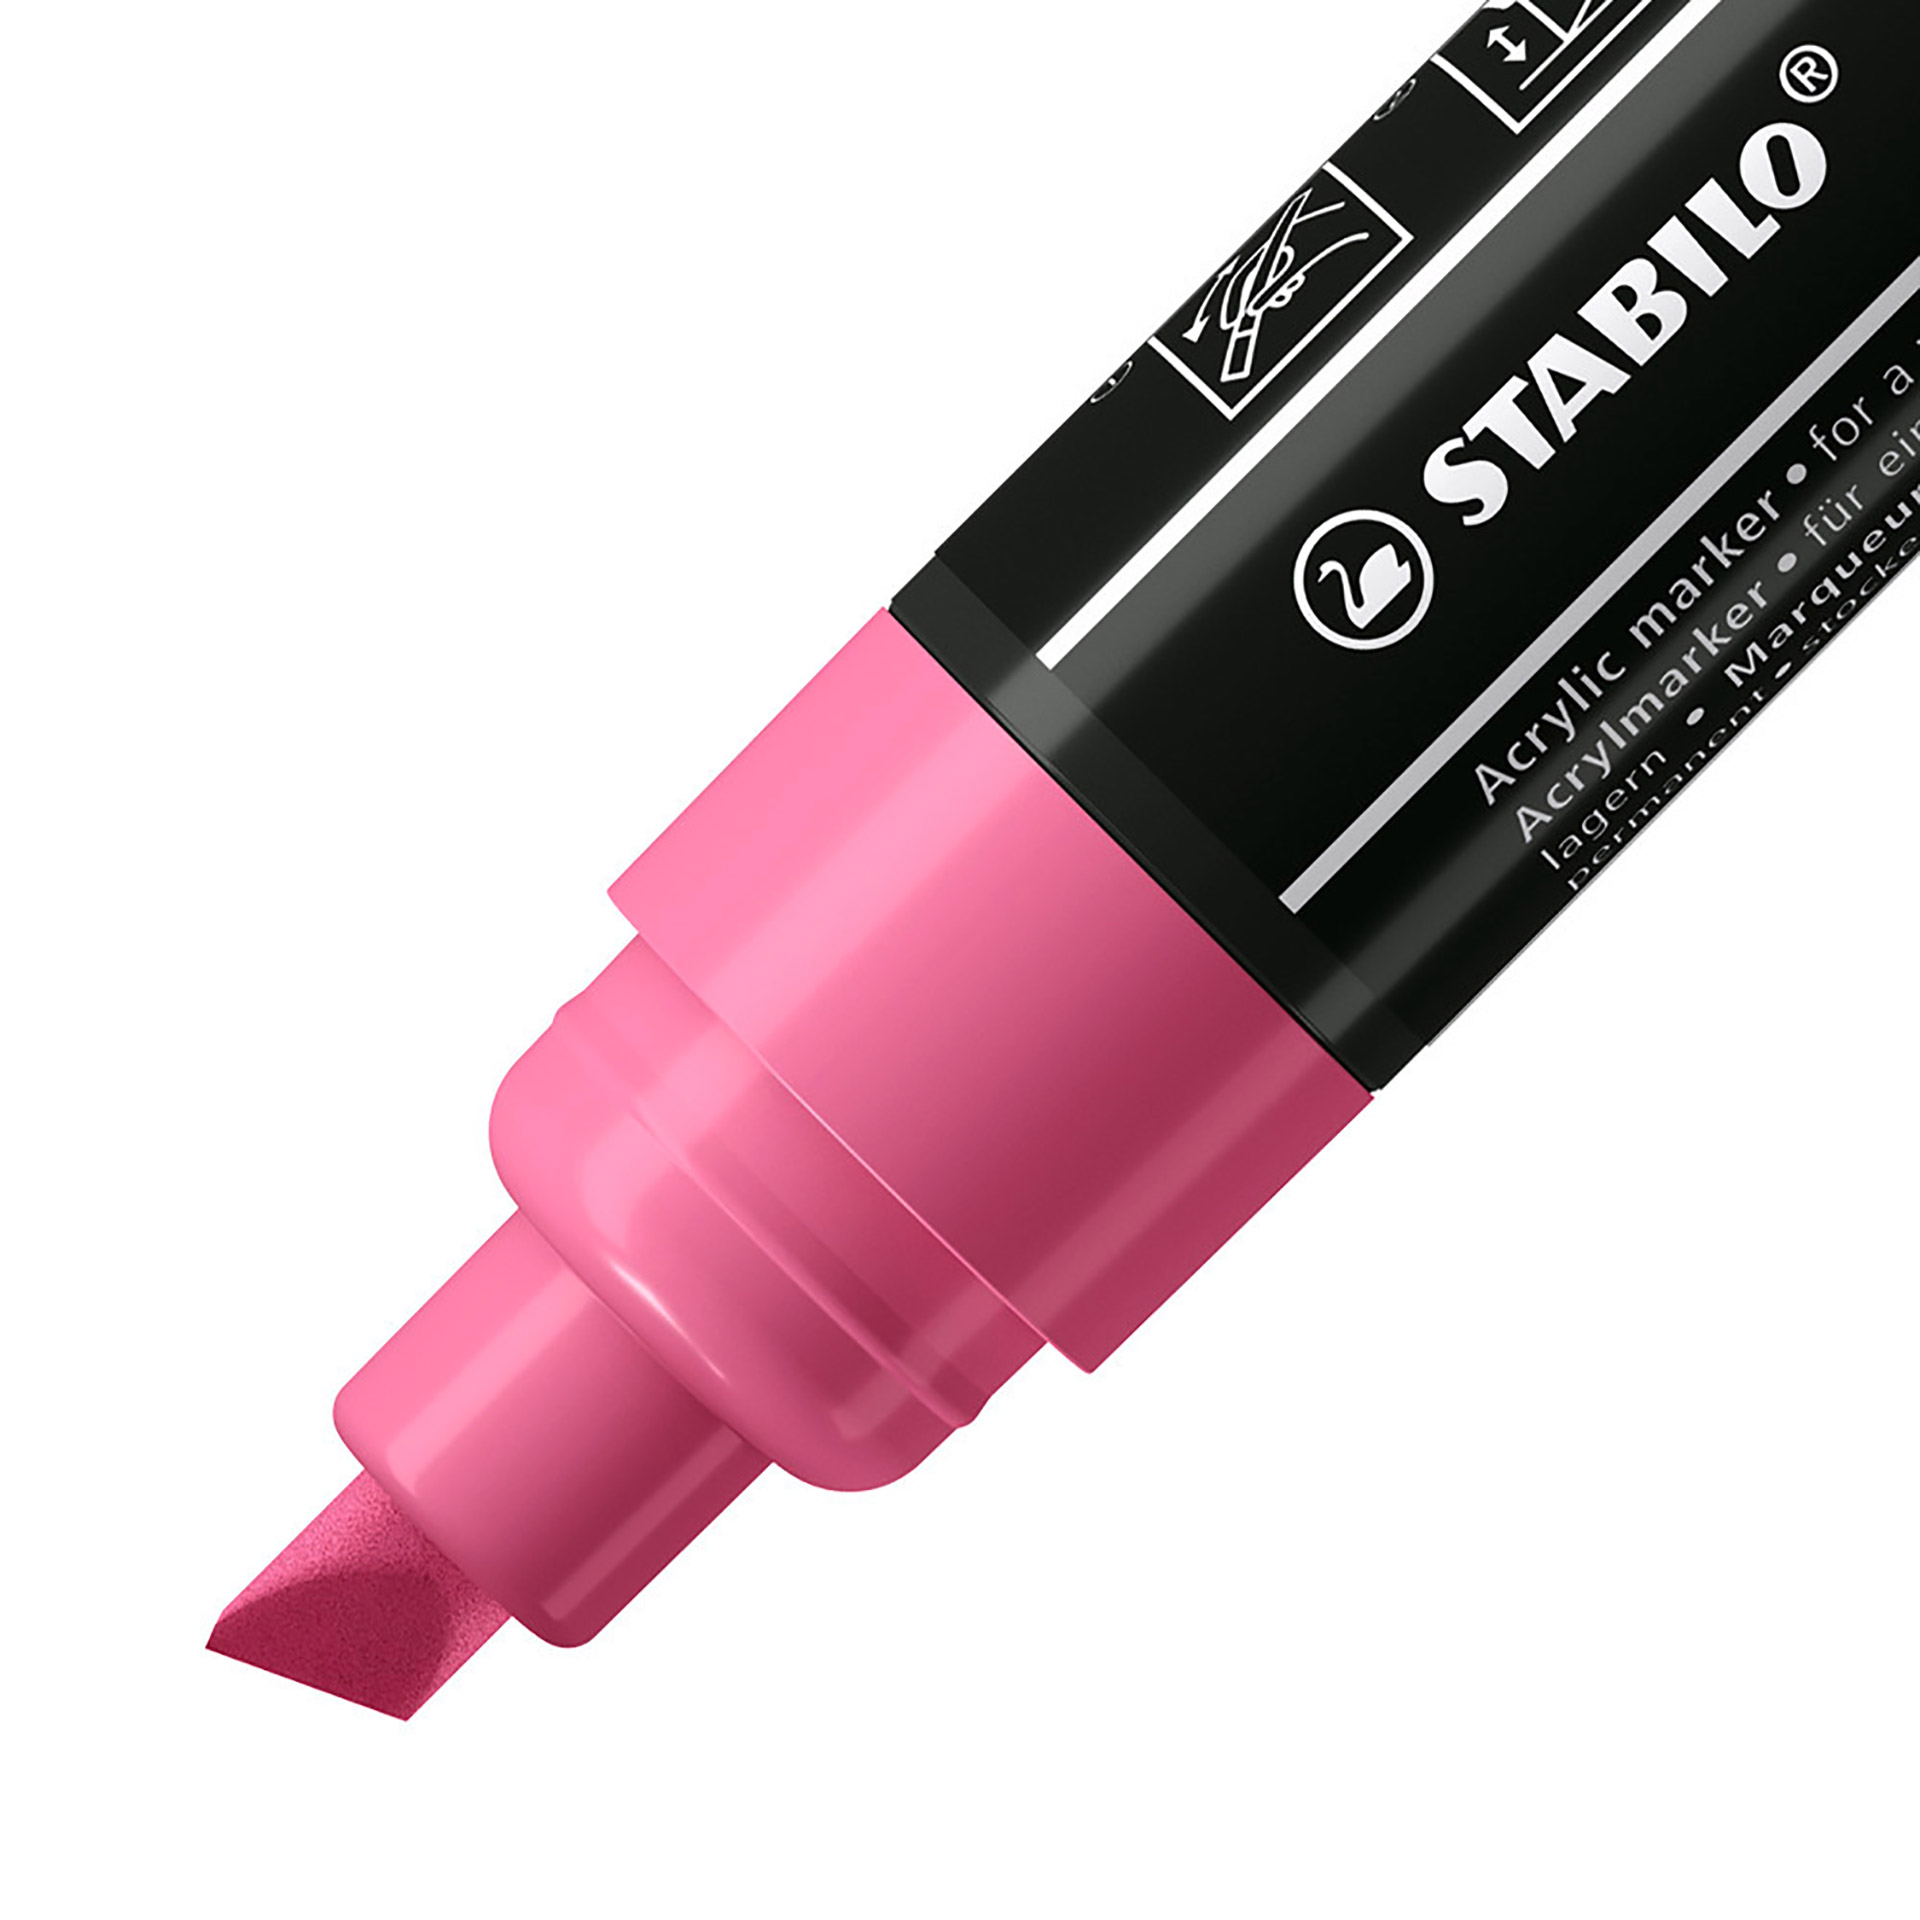 STABILO FREE Acrylic - T800C Punta a scalpello 4-10mm - Confezione da 5 - Rosa, , large